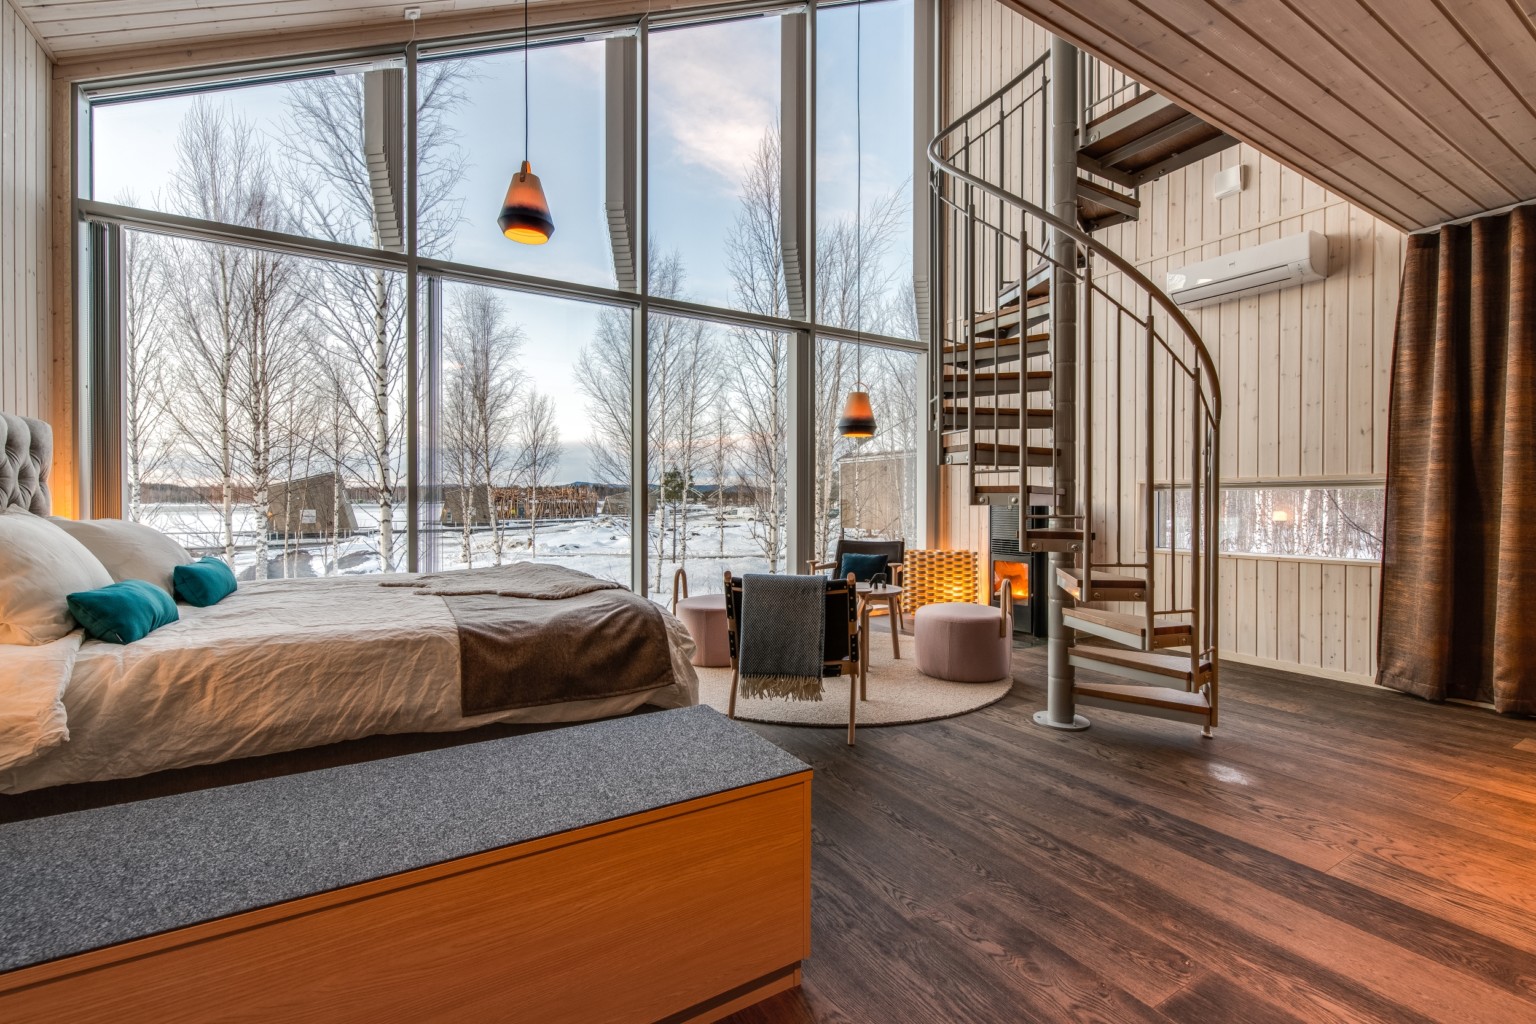 حمام، قطبی، حمام قطبی، معماری هتل در سوئد، معماری هتل قطبی